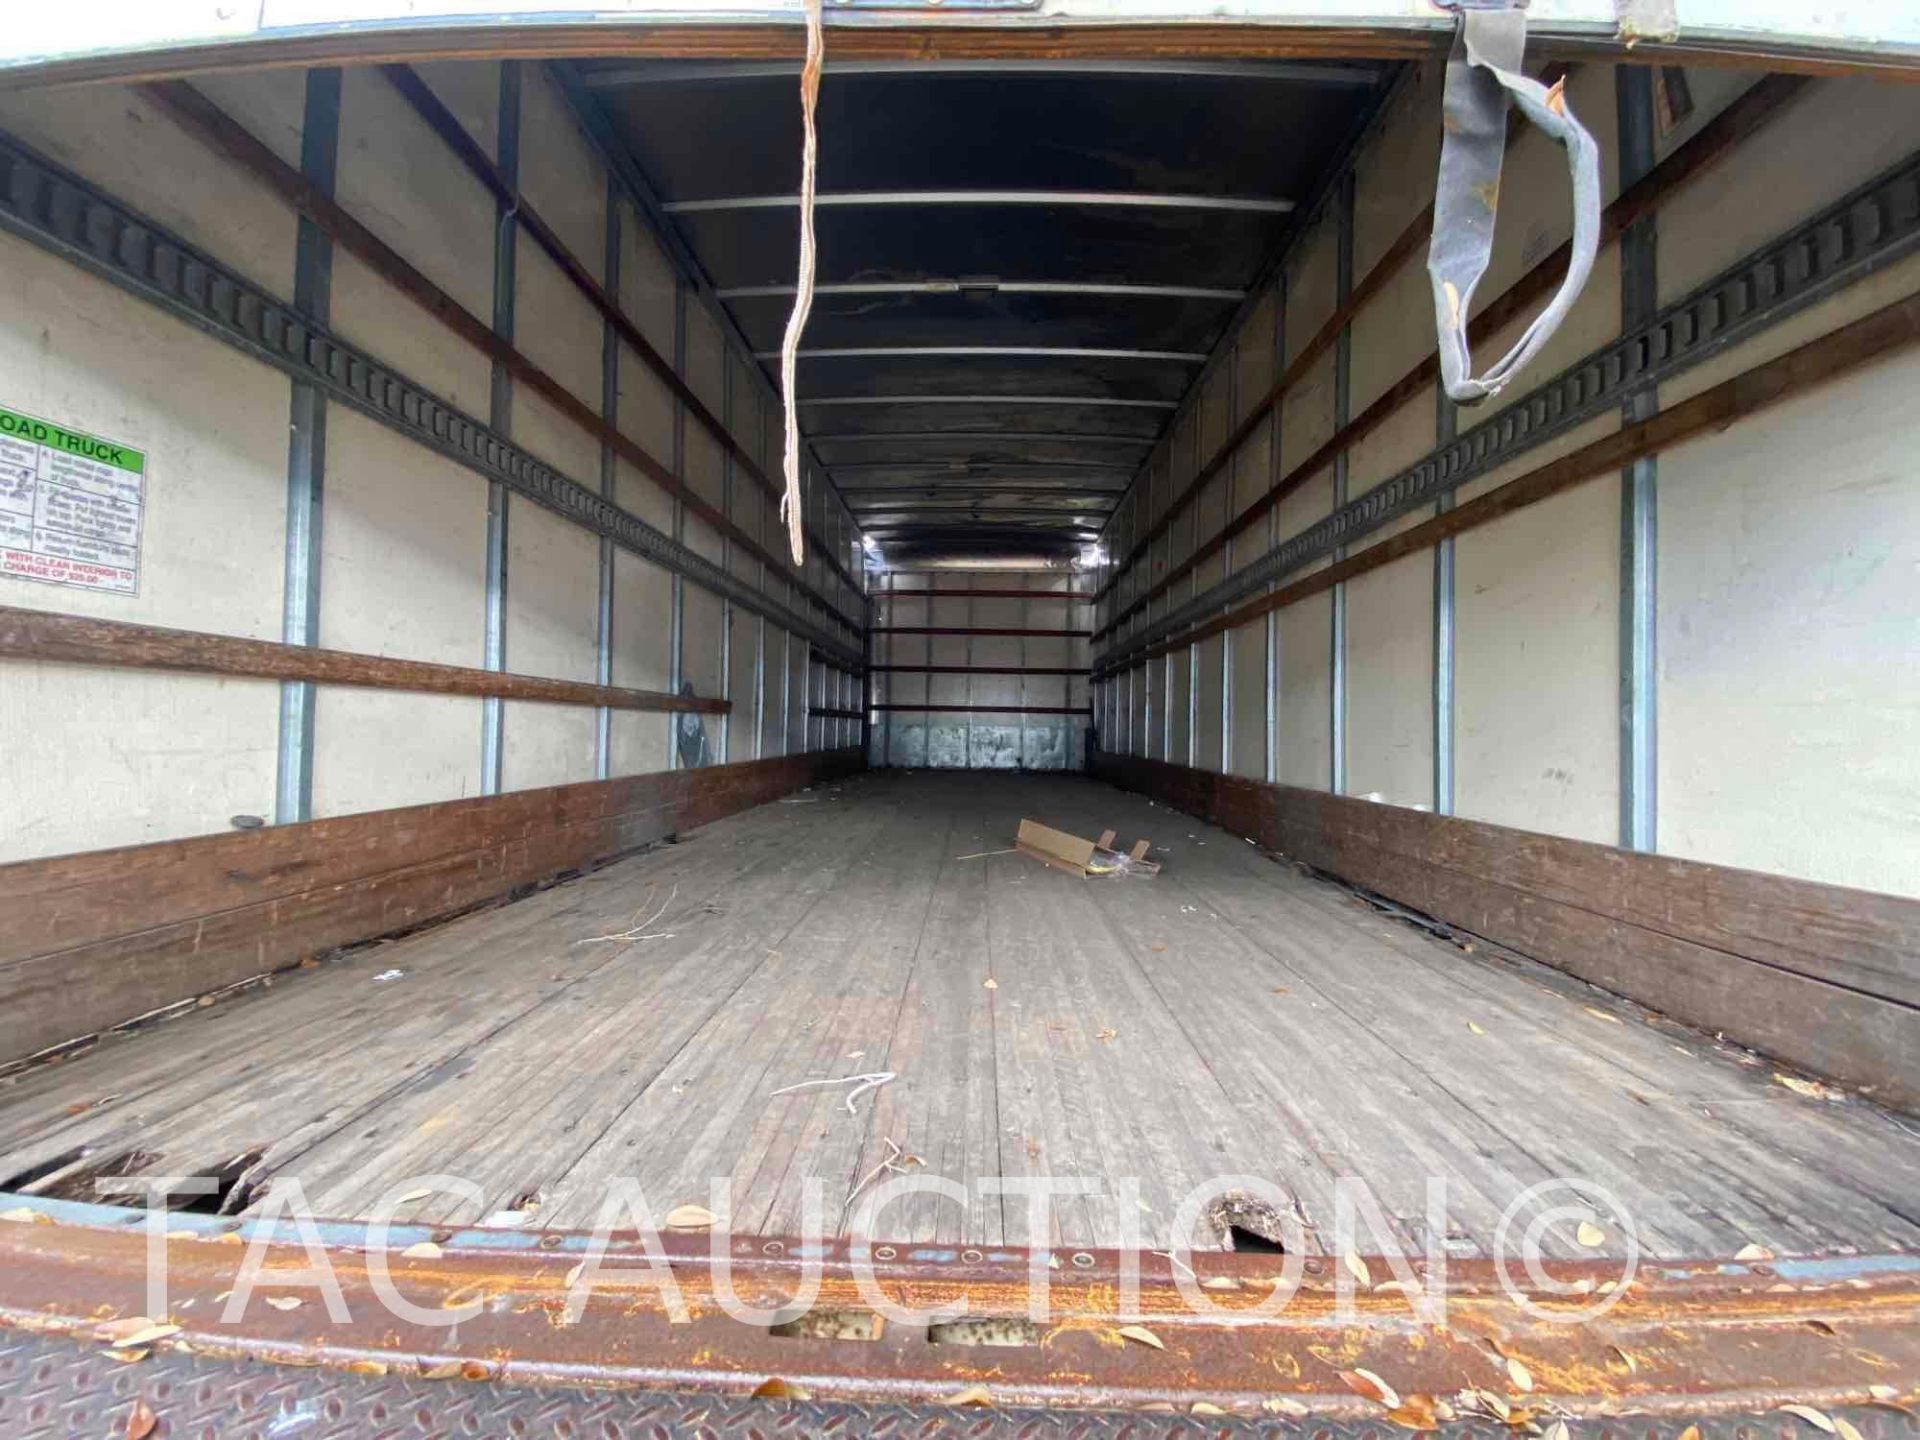 2016 Hino 268 26ft Box Truck - Image 32 of 69